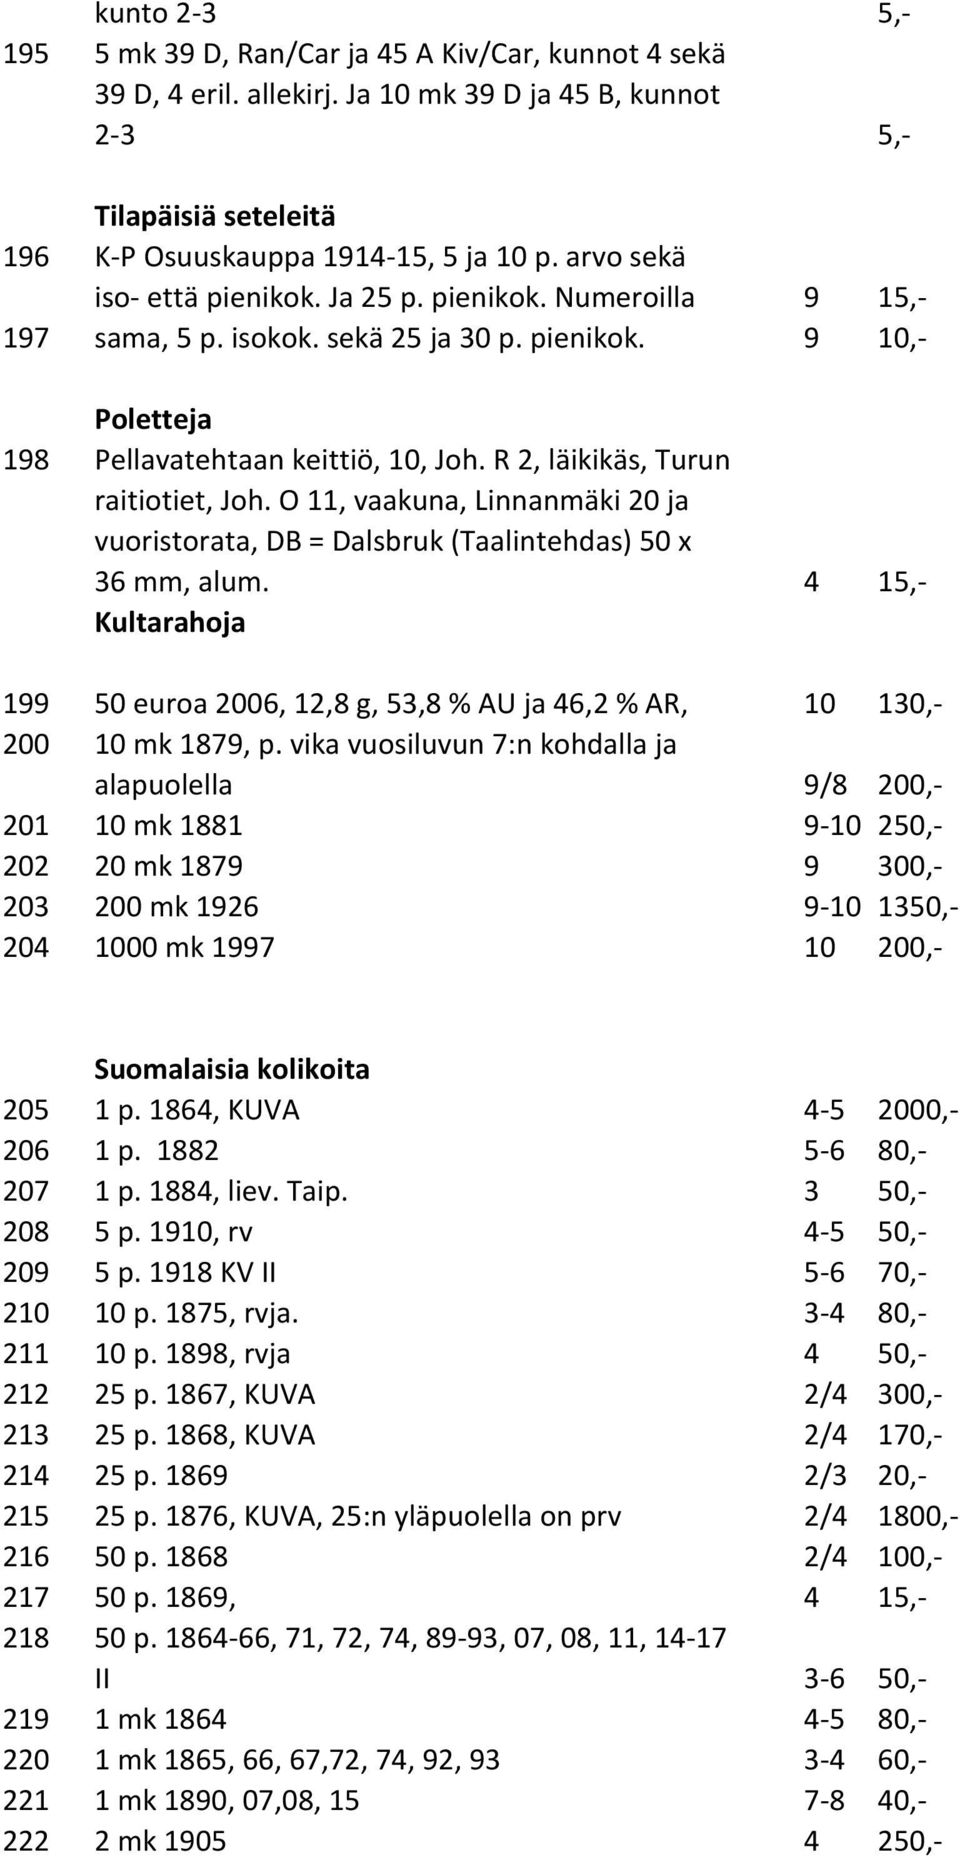 R 2, läikikäs, Turun raitiotiet, Joh. O 11, vaakuna, Linnanmäki 20 ja vuoristorata, DB = Dalsbruk (Taalintehdas) 50 x 36 mm, alum.